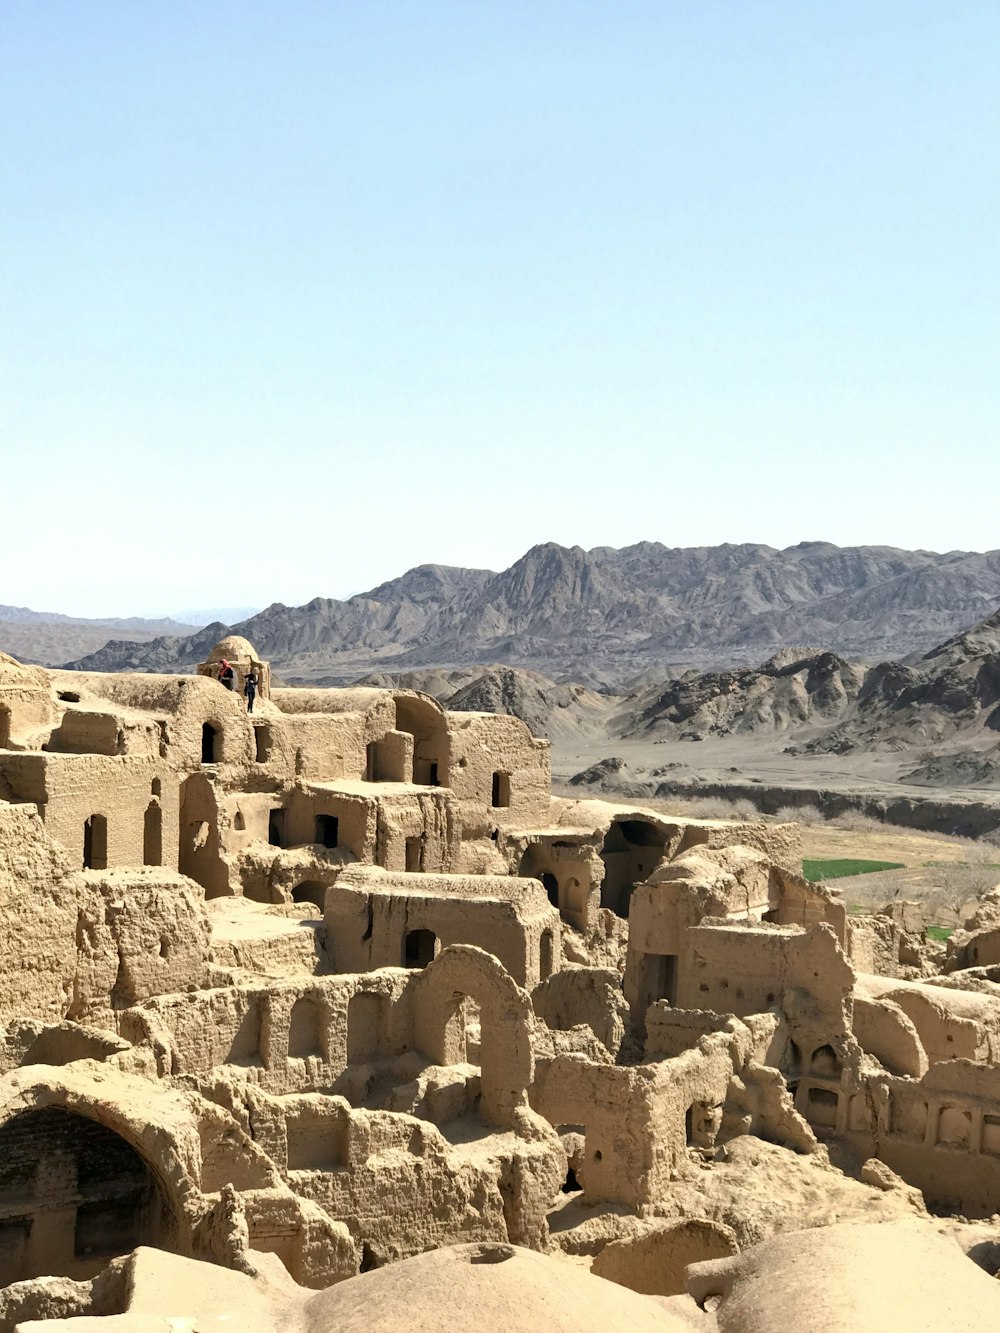 Blick auf ein Dorf mitten in der Wüste